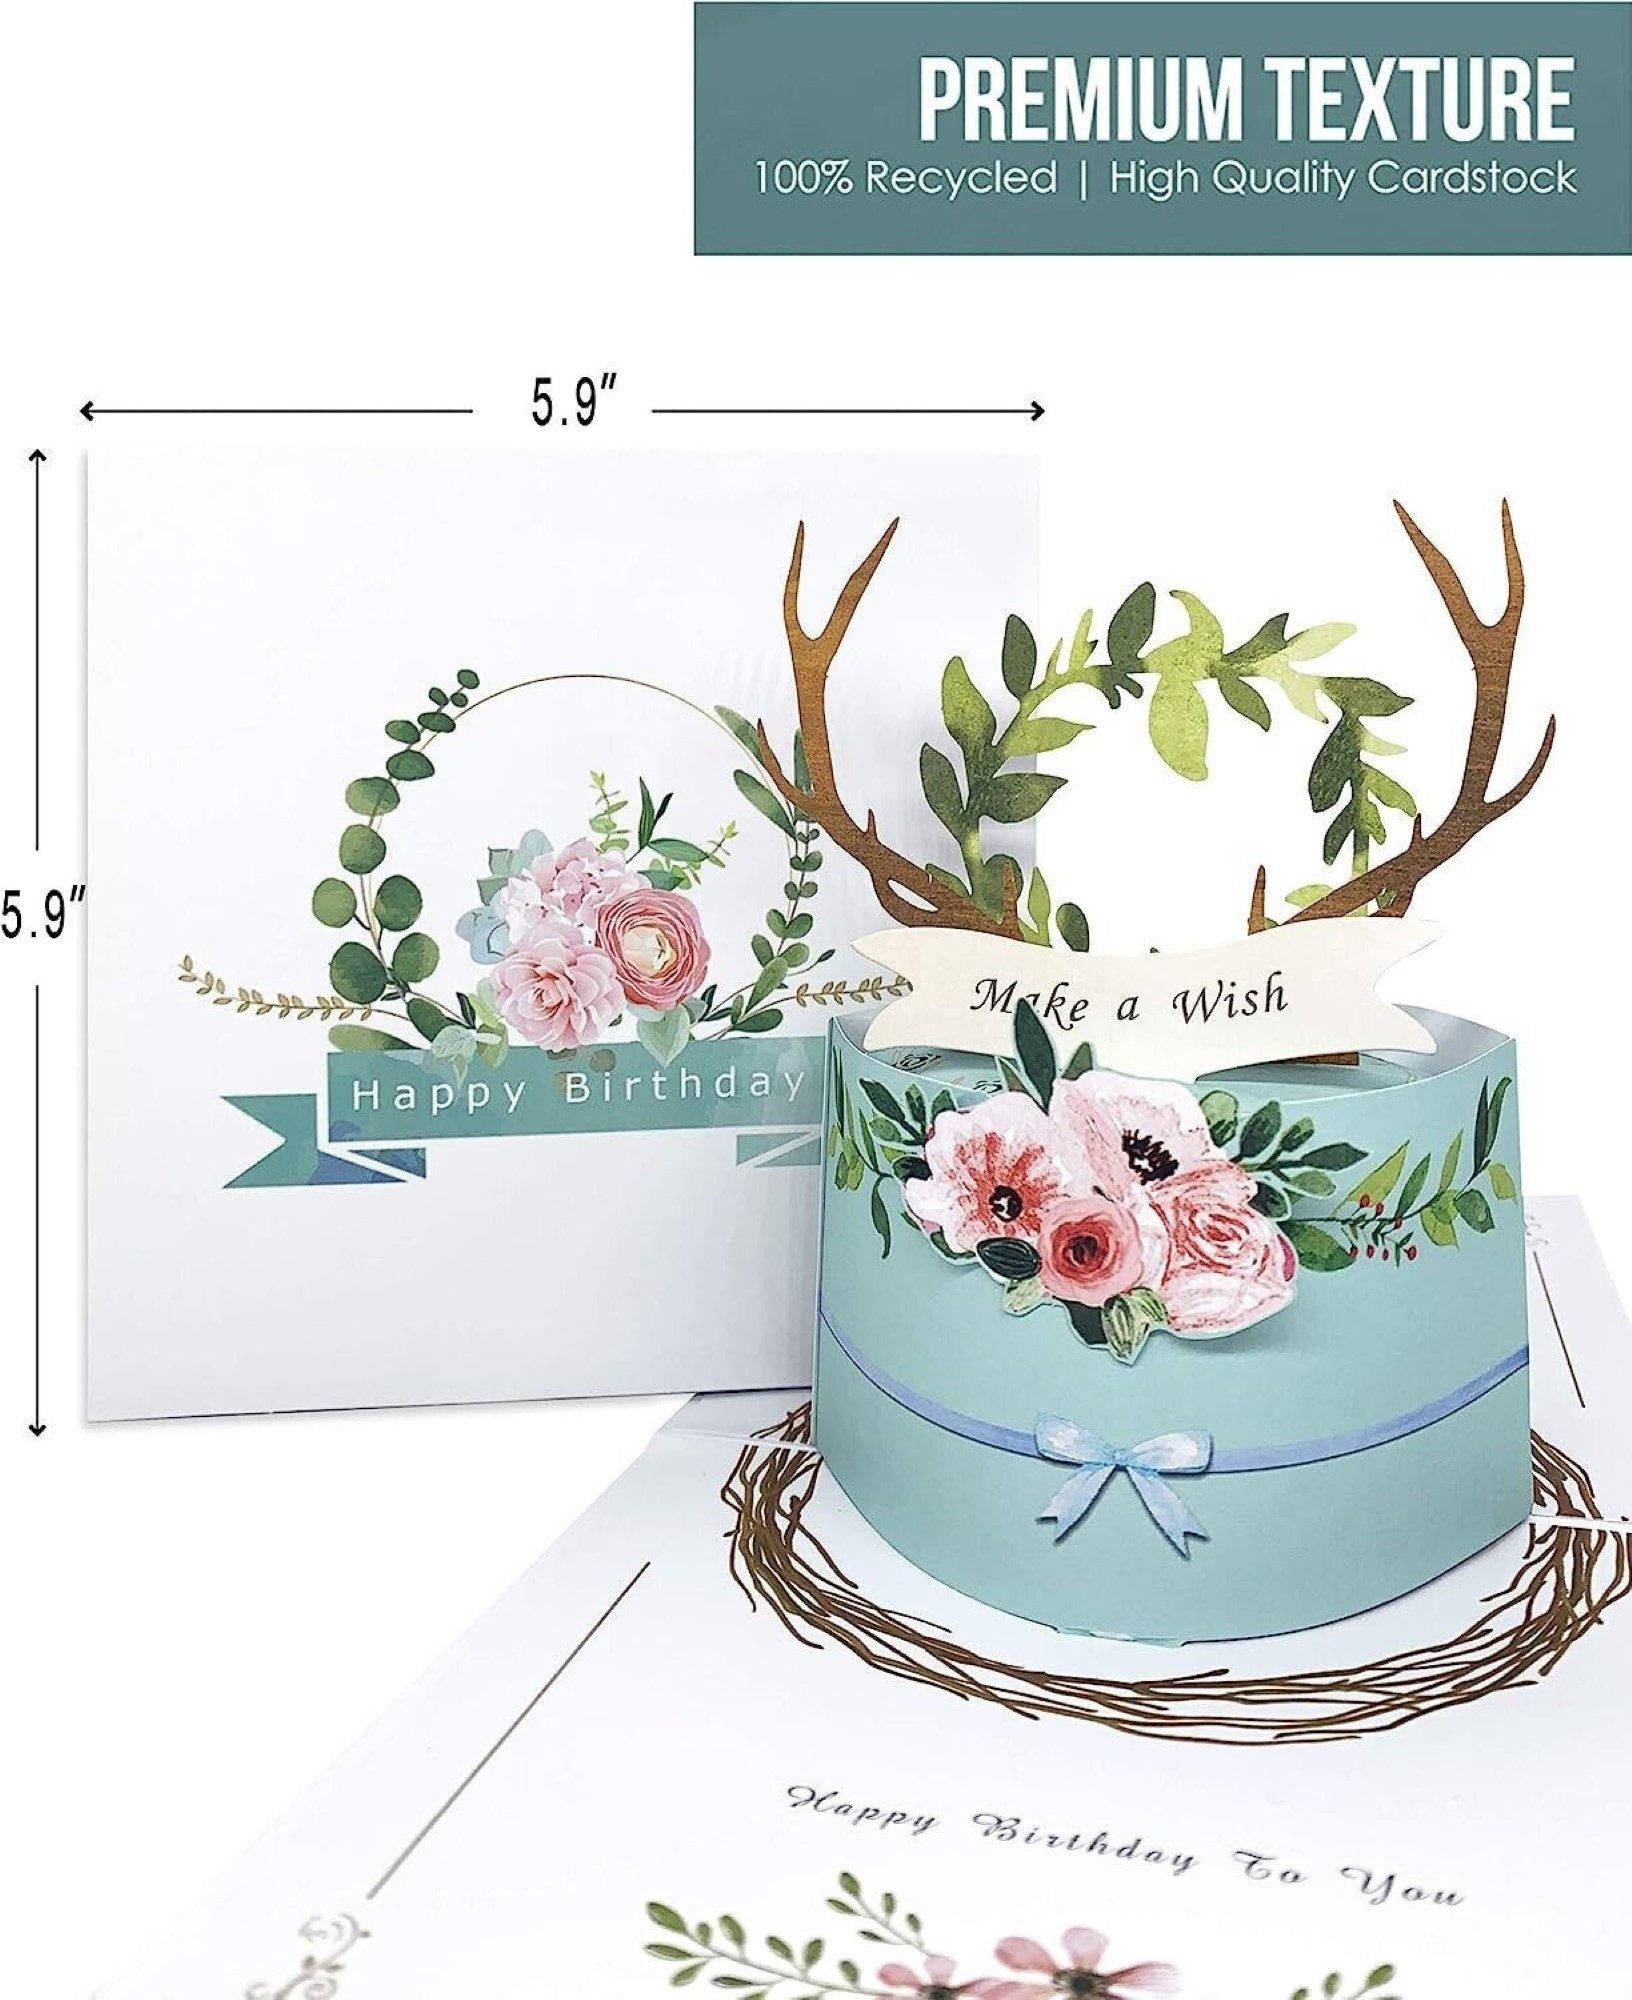 LA CUTE Geburtstagskarte 3D Happy Birthday Pop-up Grußkarte - Feierliche Geburtstagsgratulation, 3D-Pop-Up-Geburtstagskarte mit süßem Kuchen und floralem Design